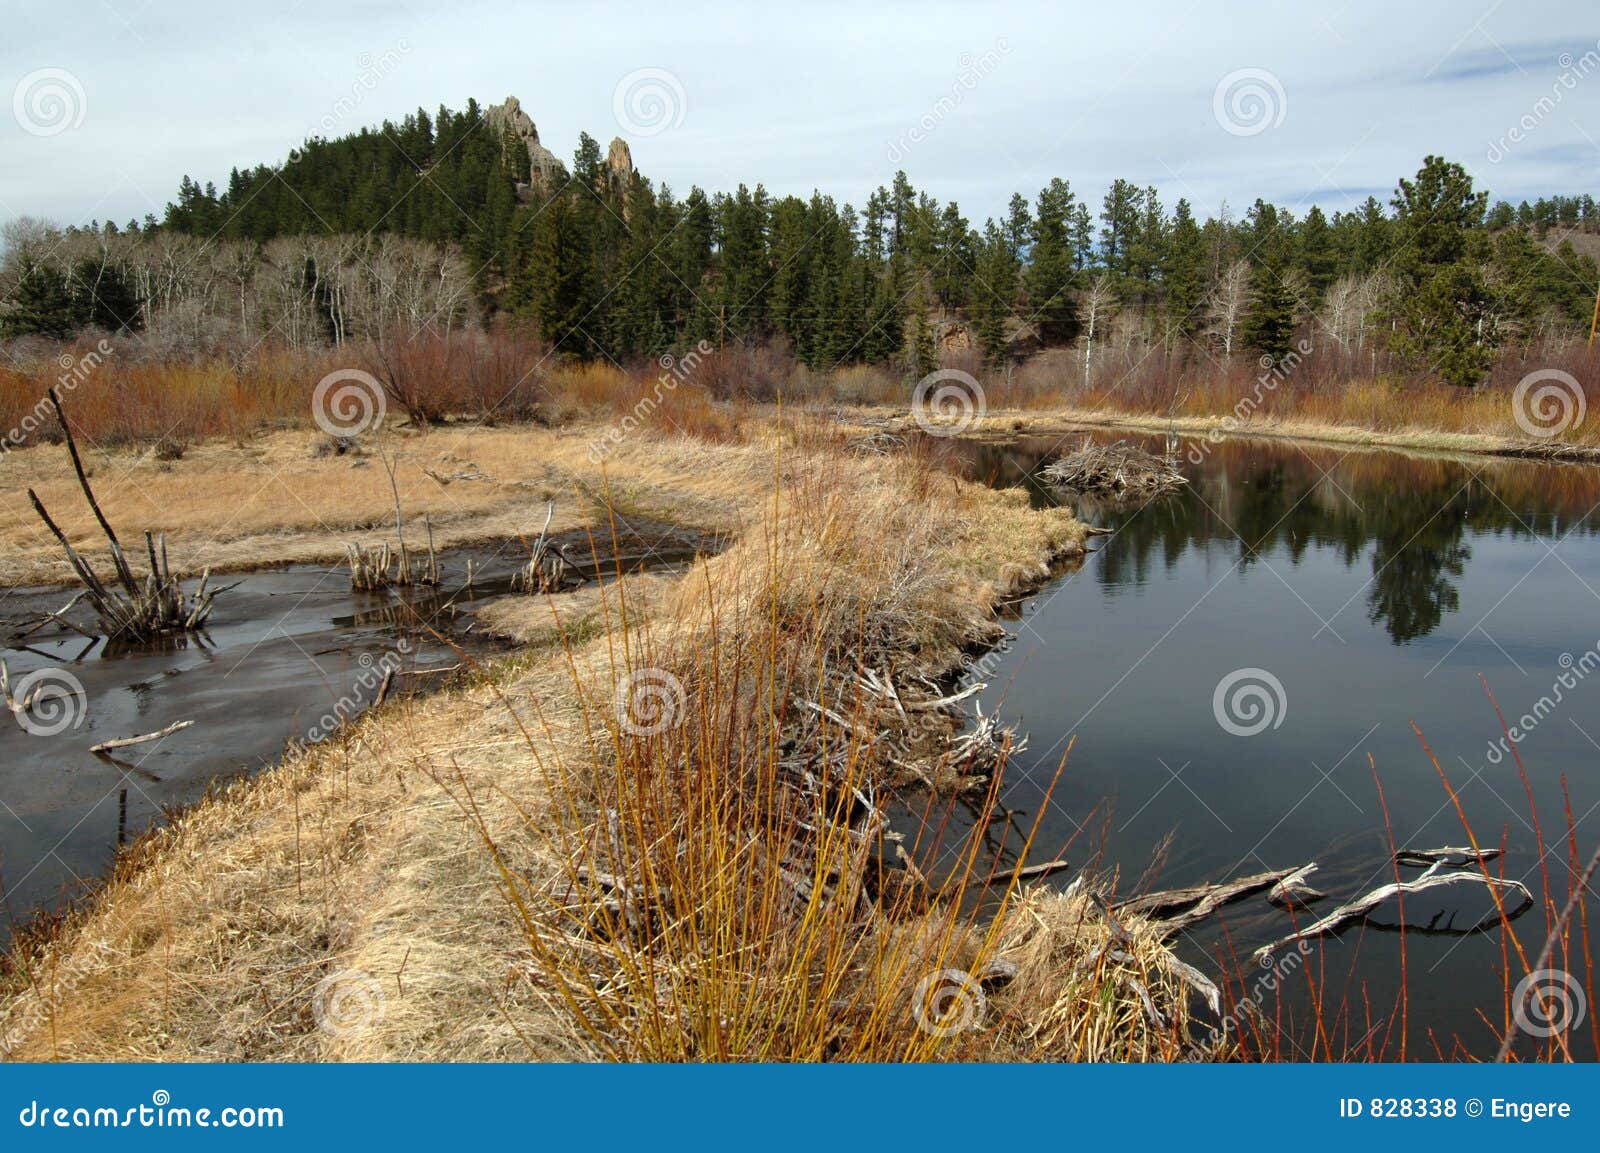 beaver ponds